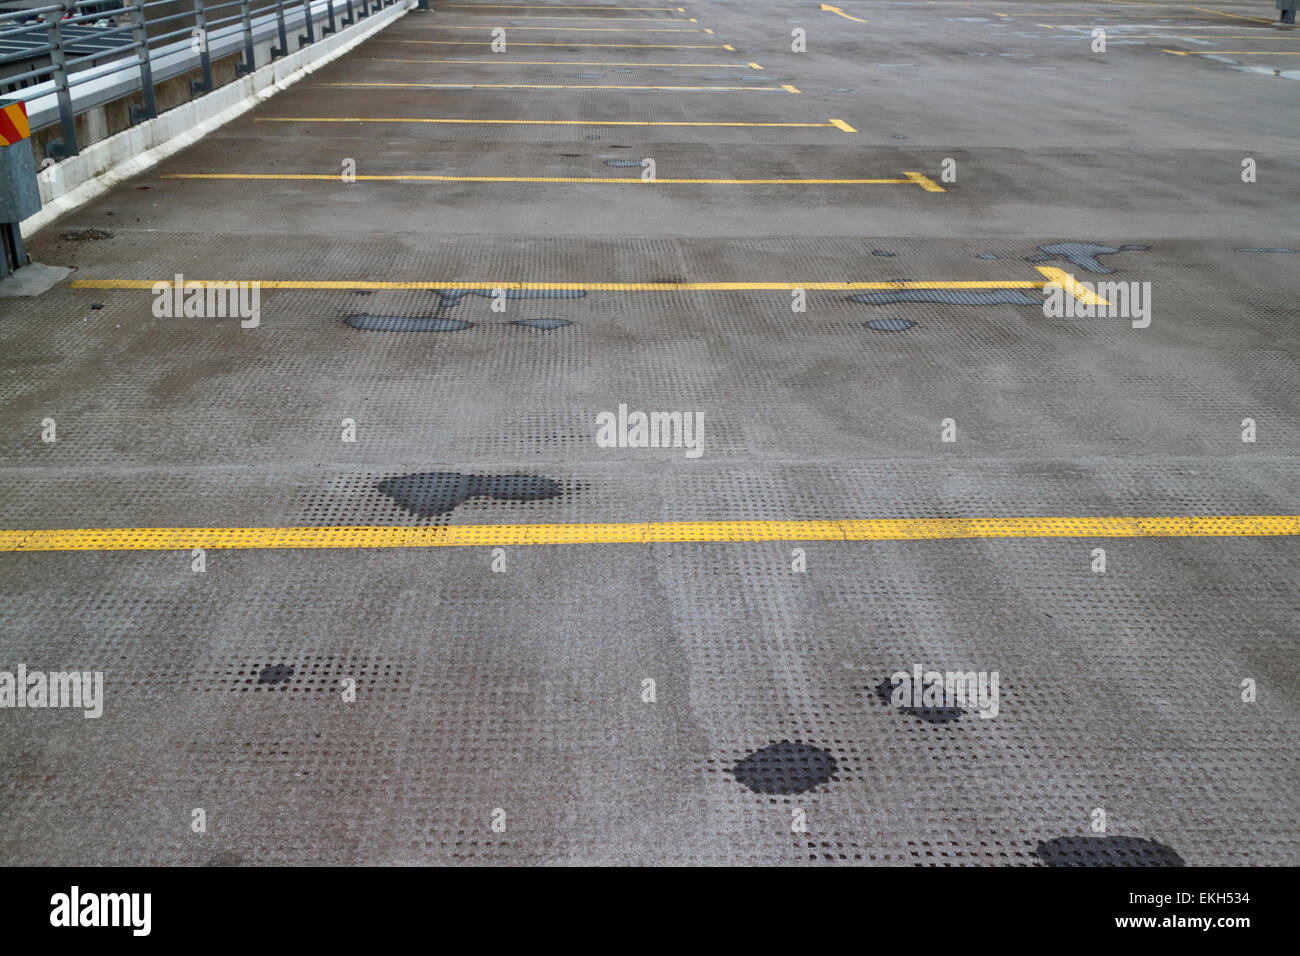 Baies de parking vide à l'étage supérieur d'un parking de plusieurs étages au Royaume-Uni Banque D'Images